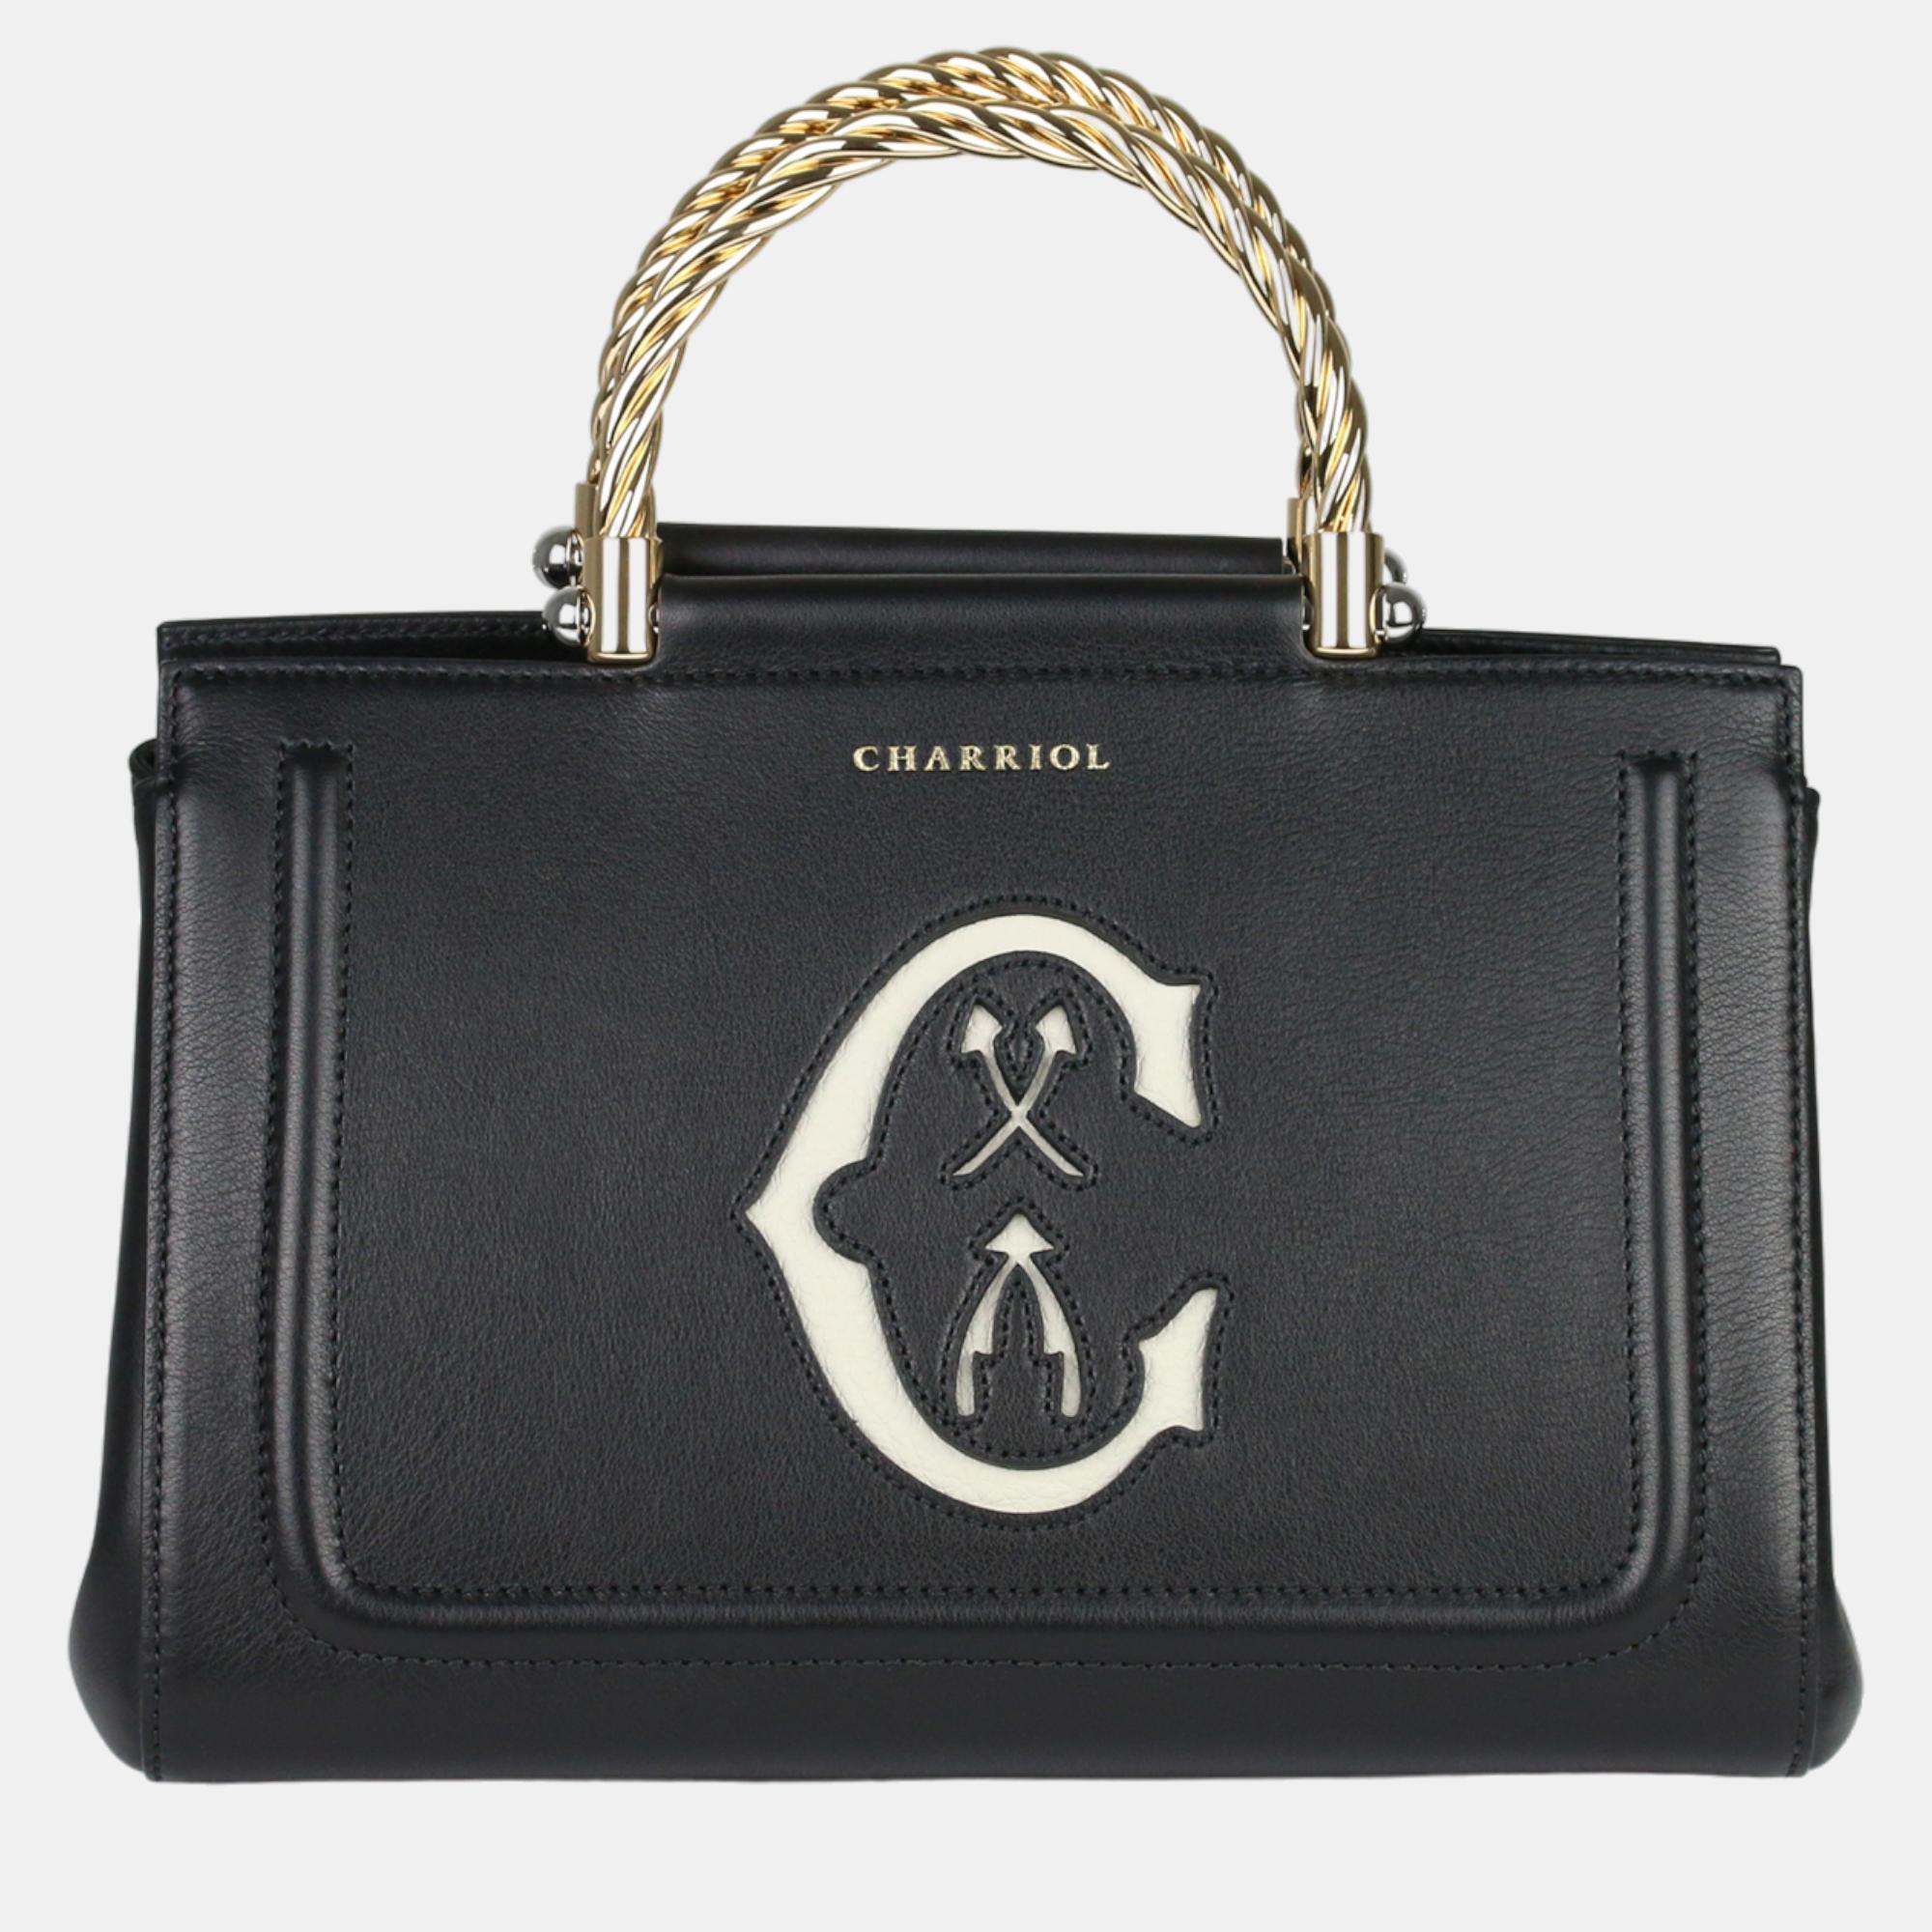 Charriol black leather marie olga handbag